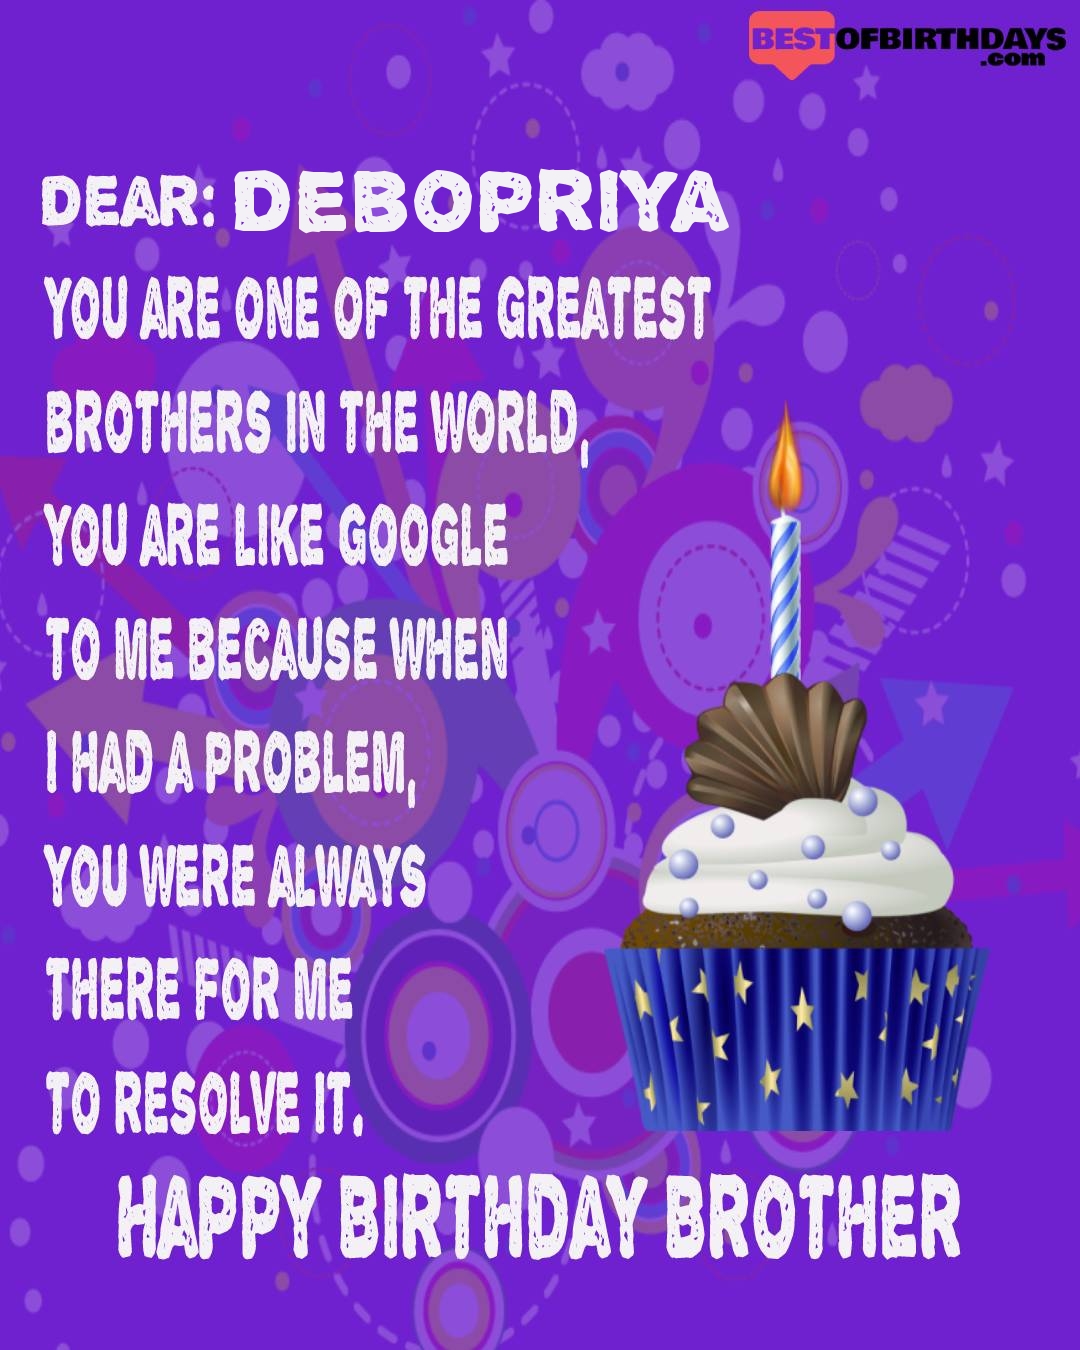 Happy birthday debopriya bhai brother bro